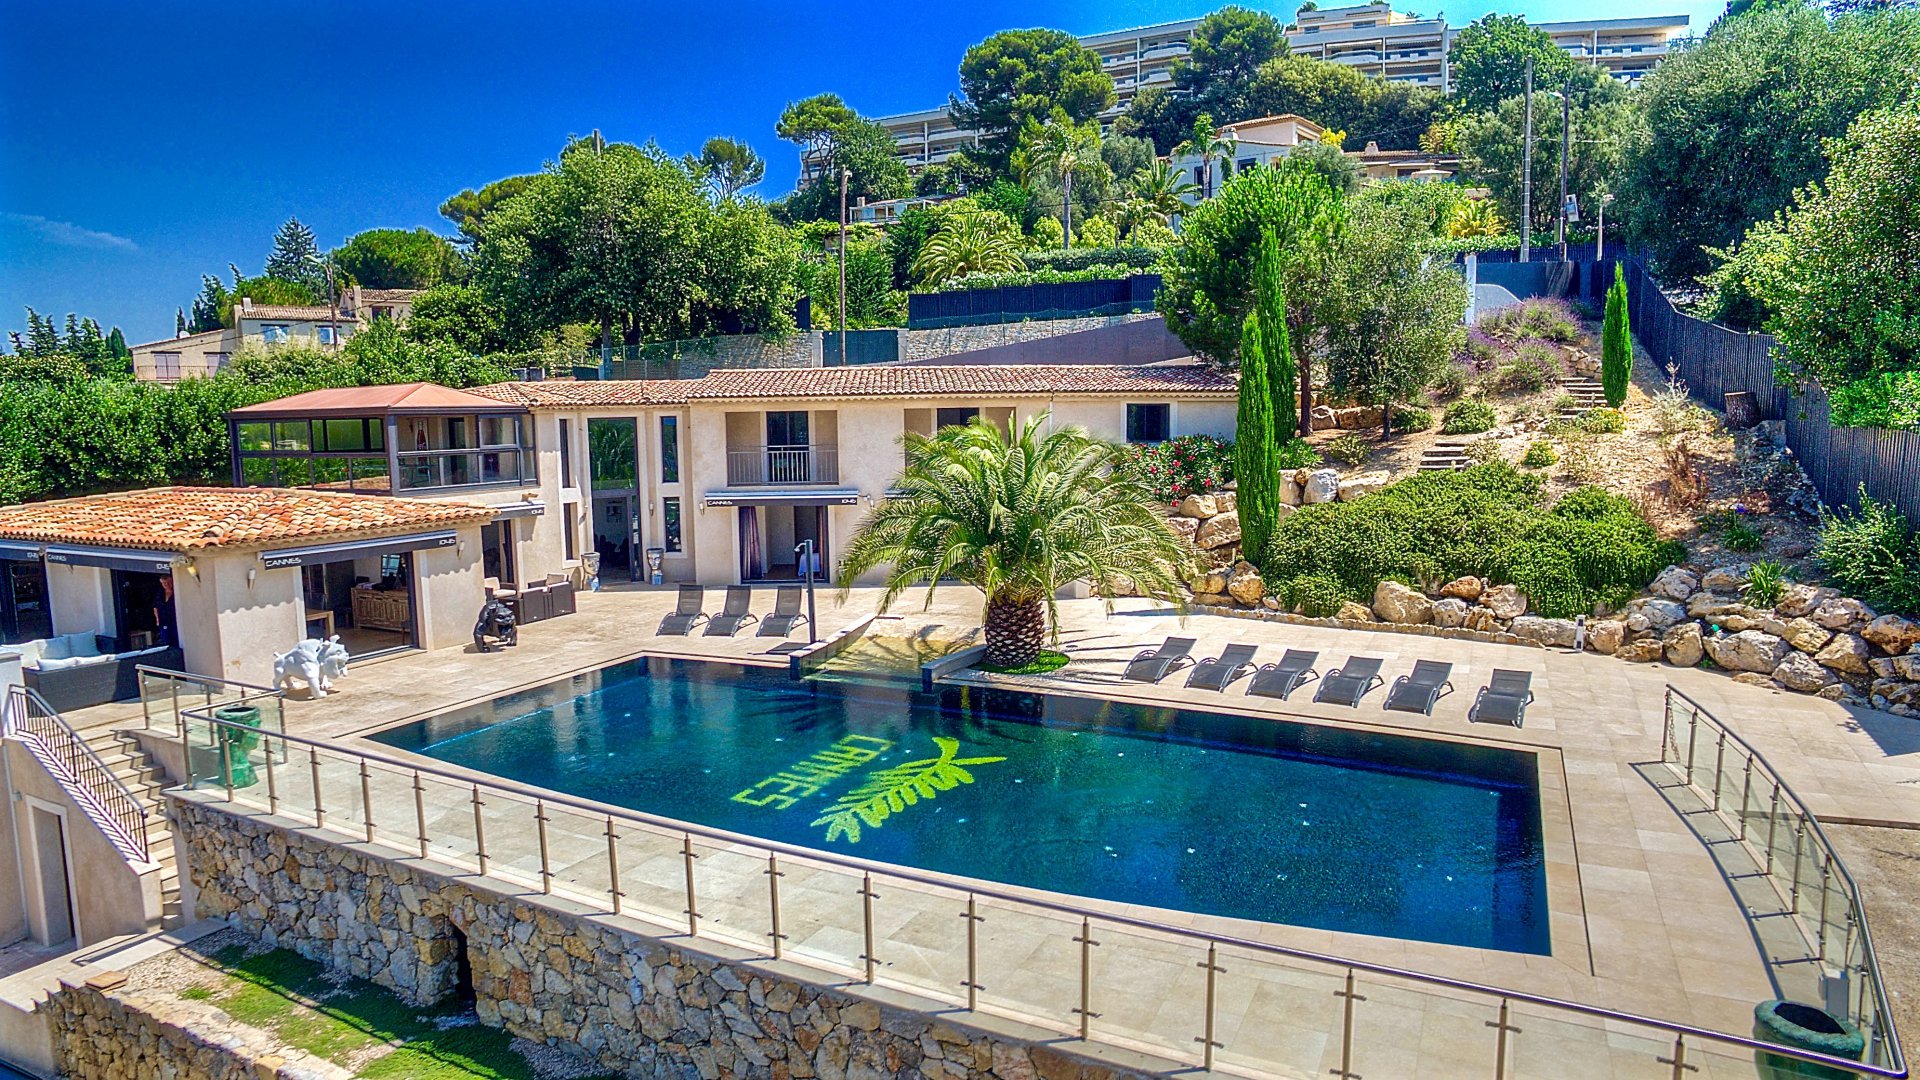 Maison Luxe Cote D Azur Tutorial Pics